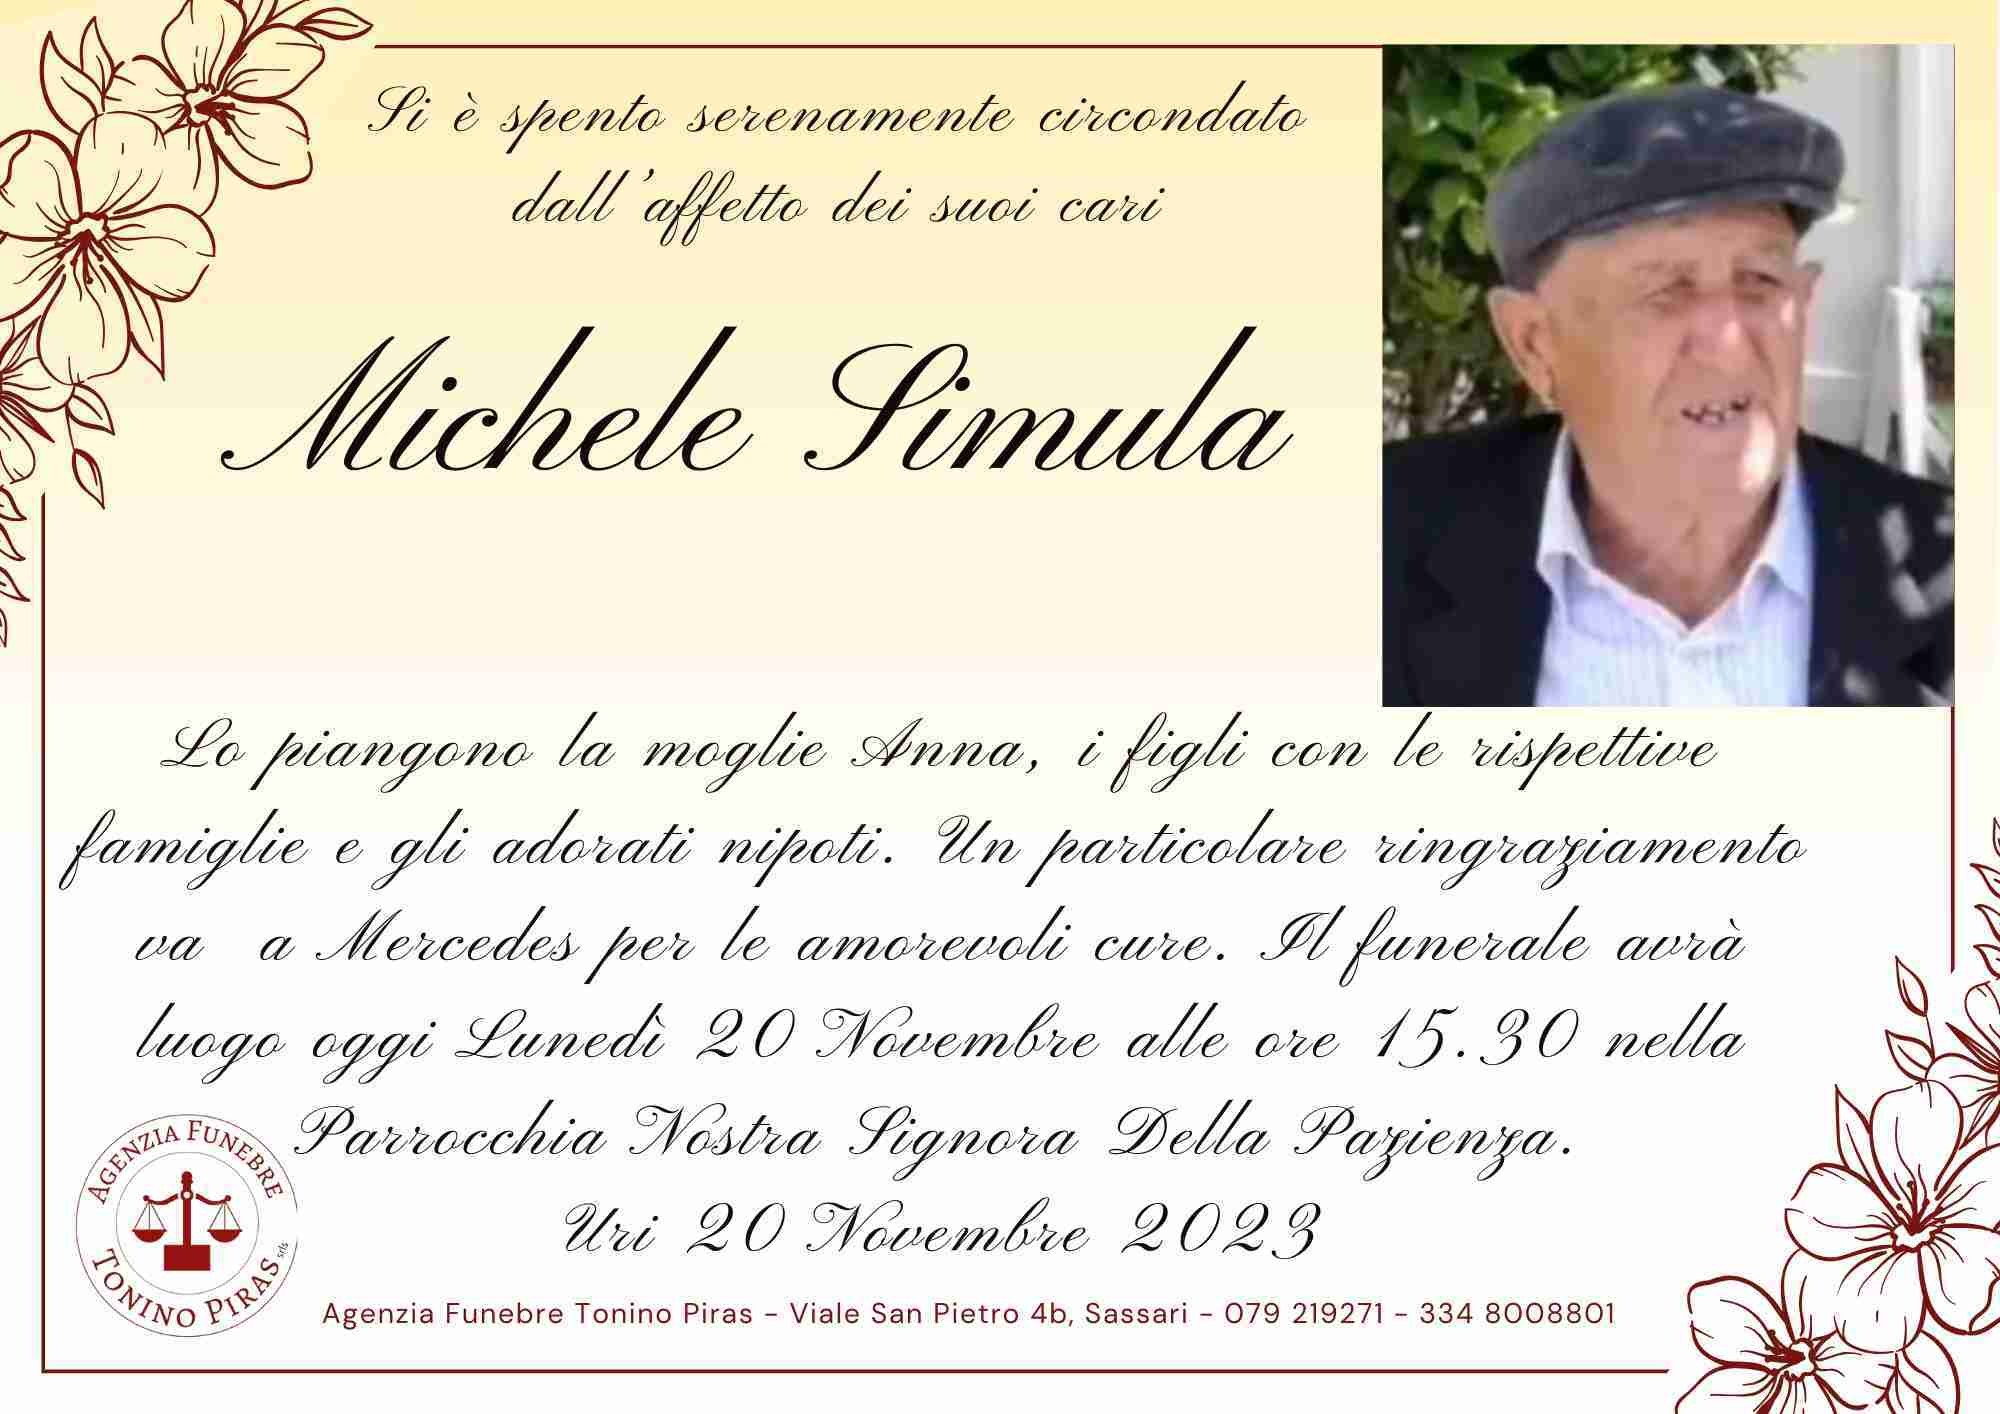 Michele Simula